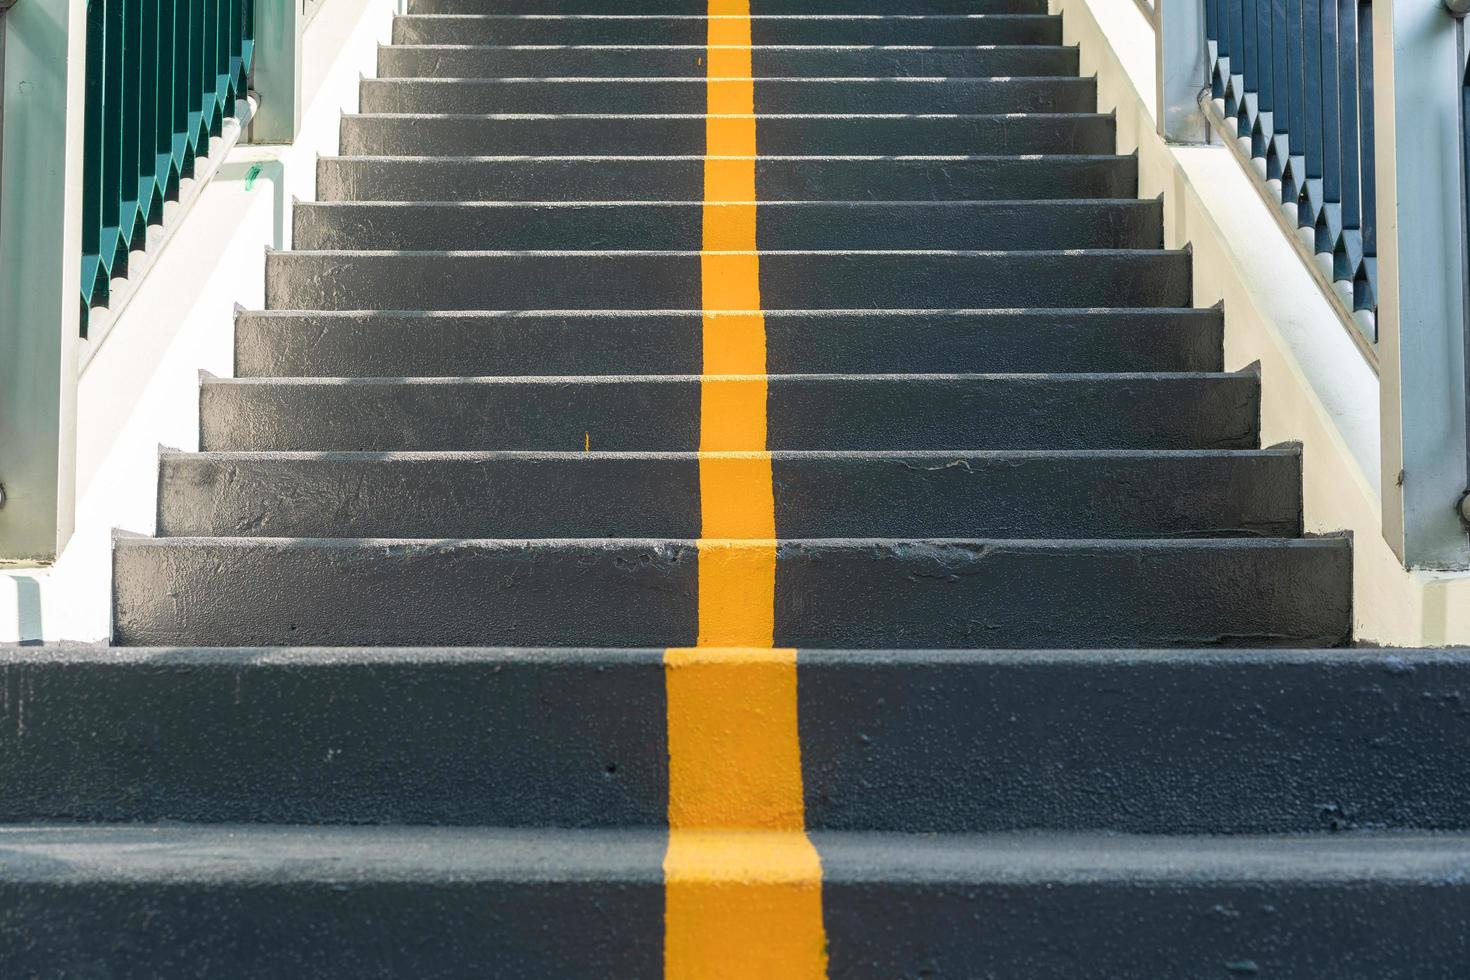 överfartens trappa med gul körfältslinje och räcke för vägkorsningssäkerhet. gå tecken på stege. gult kors på trappan. foto